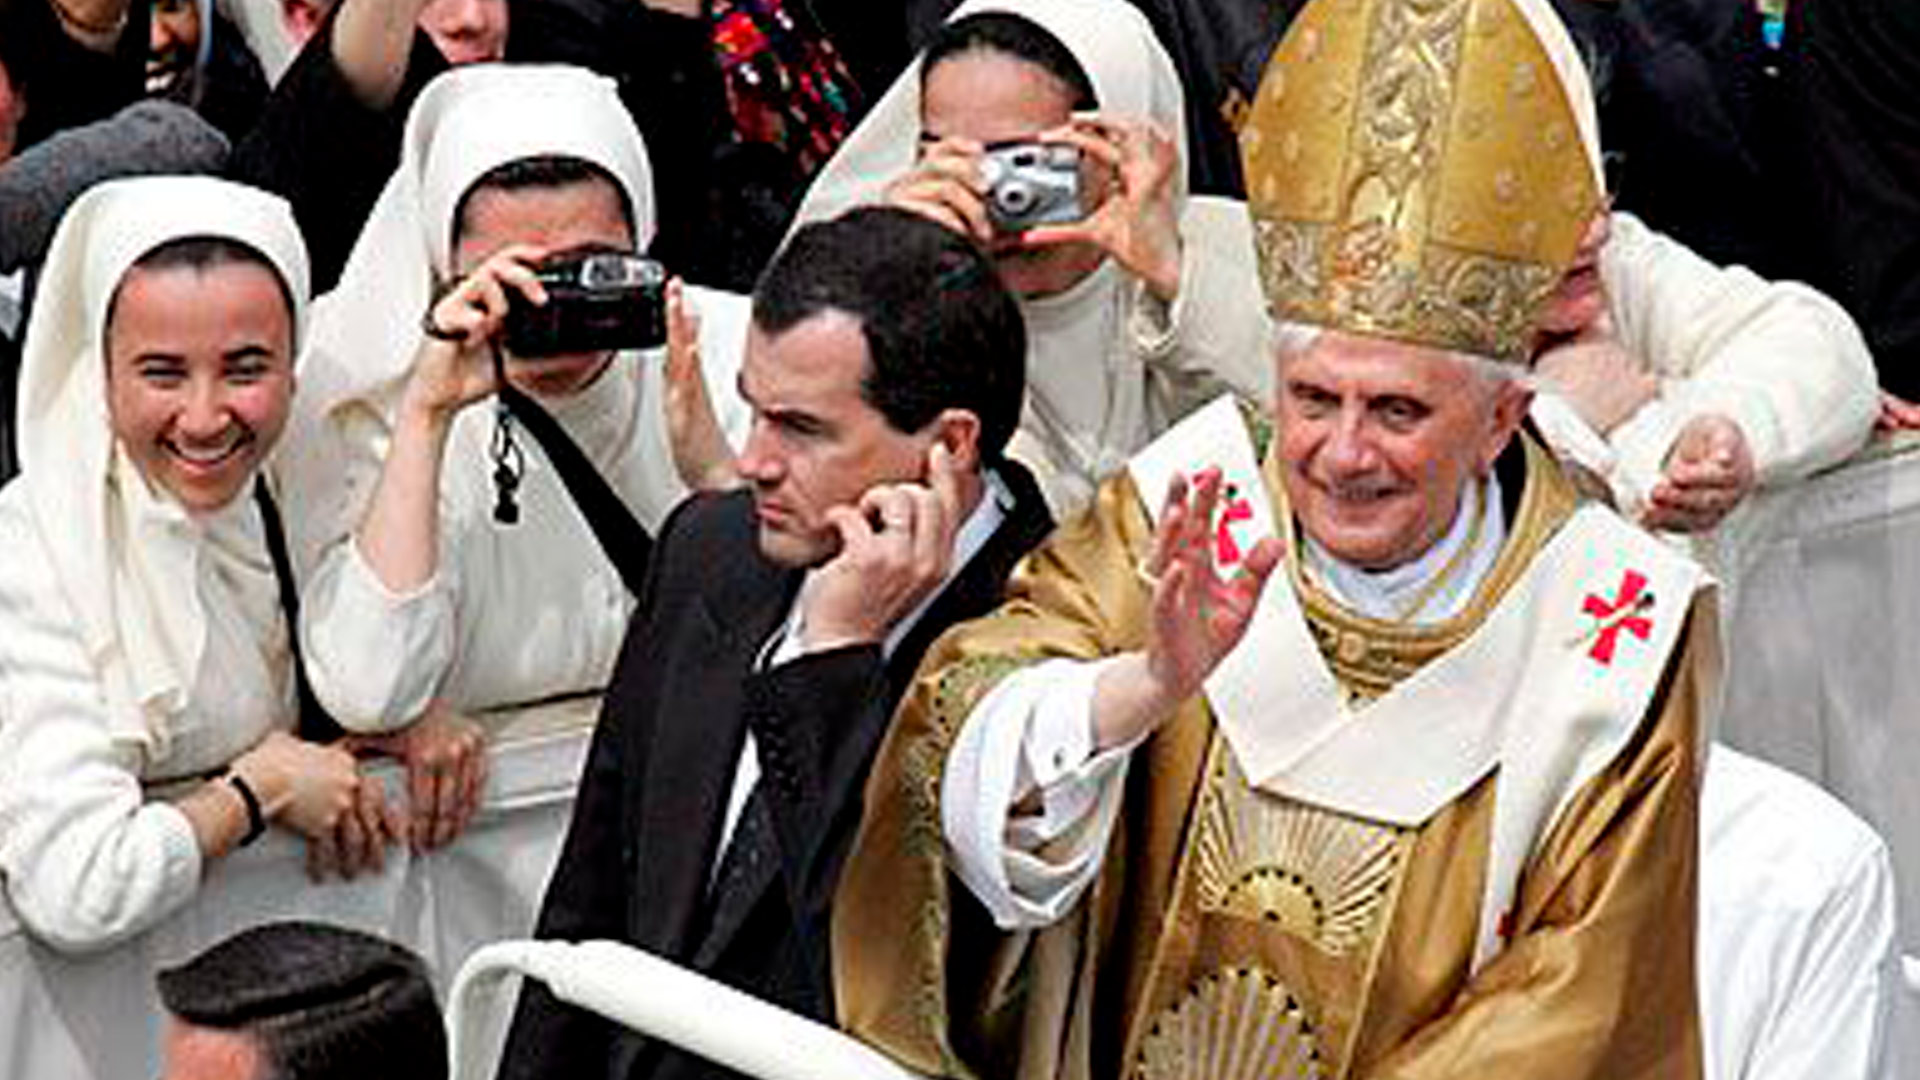 Benedicto XVI redactó tres cartas encíclicas desde su elección el 19 de abril de 2005 hasta su renuncia el 28 de febrero de 2013, en cada una de ellas habla de una de las tres virtudes teologales: la fe, la esperanza y la caridad